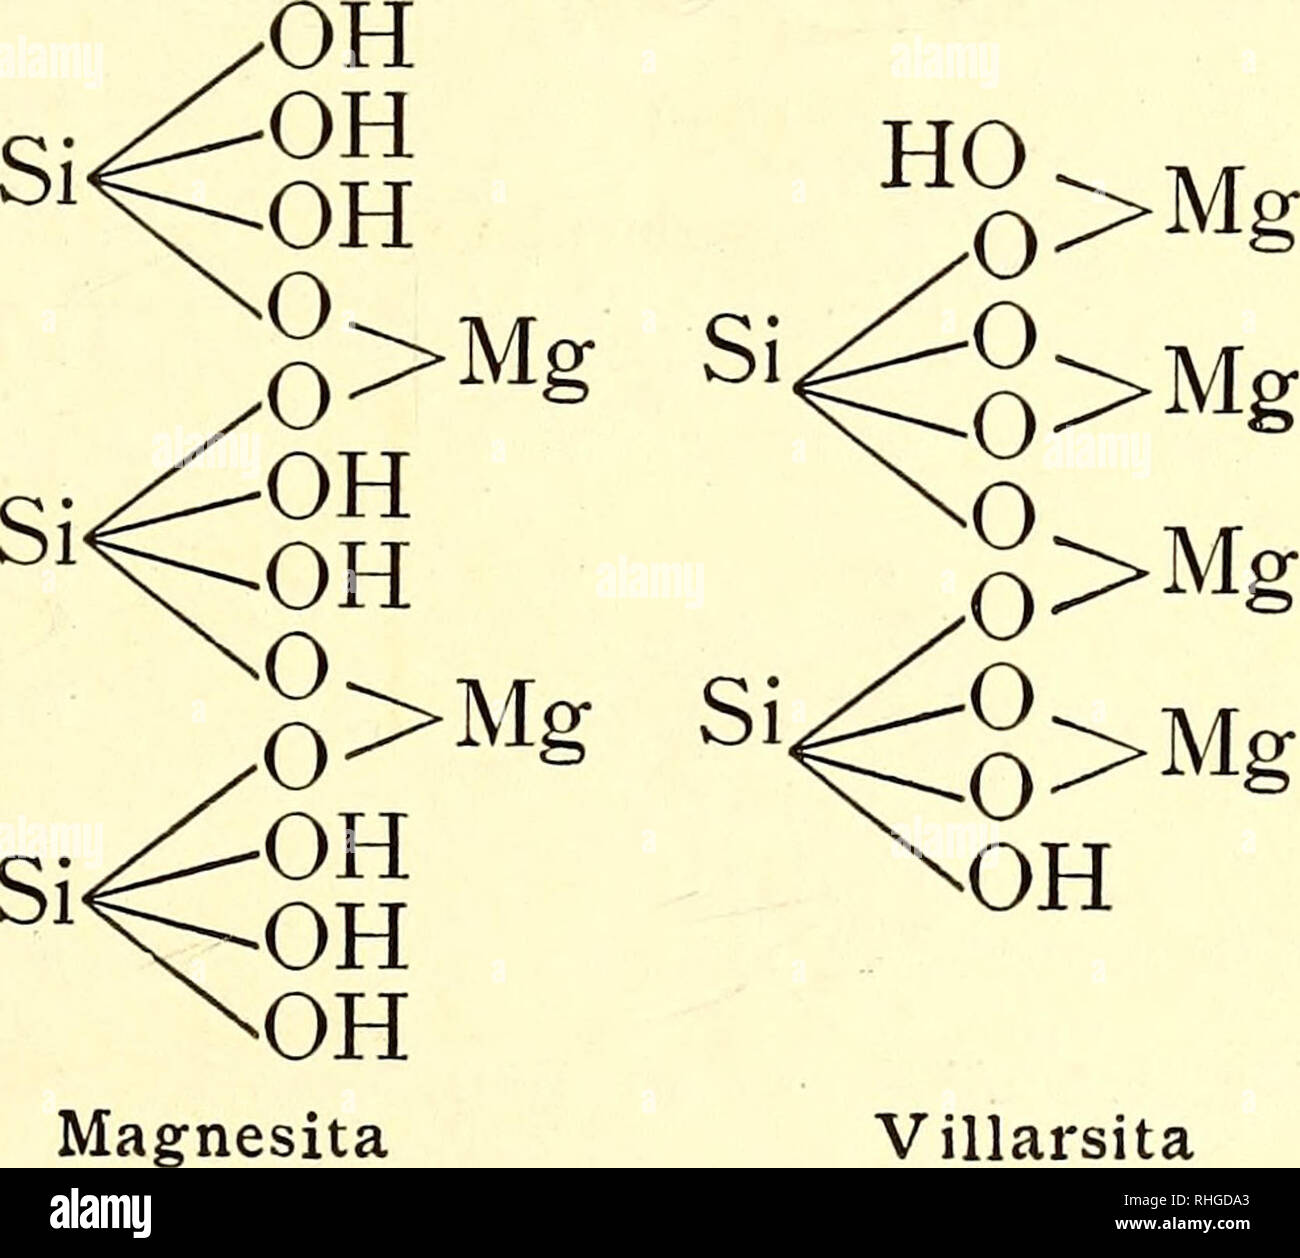 . Boletín de la Sociedad Aragonesa de Ciencias Naturales. Natural history; Botany. DE CIENCIAS NATURALES 193 Clintonitas. También estos silicatos son considerados por Tschermak como resultado de mezclas isomorfas, de silicatos y aíuminatos x [2 (s¡00 + 2 SiOCa+ l &gt;Mg4- l 0=A1 —O 0=A1—O O-Al-OHj Otrelitas. Composición análoga á las anteriores pero ferríferas [SiOFe Al=OHl SiOFe J |  Al-OHj Serpentinas. Son orto (Serpentina Magnesita, Villar- sita) y meta (Talco) silicatos ácidos, alguna vez ácidos y básicos (Villarsita), magnésicos. He aquí sus fórmulas: OH 0&gt;Mg 0&gt;Mg+H,0 Si 0&gt;Mg OH  Stock Photo